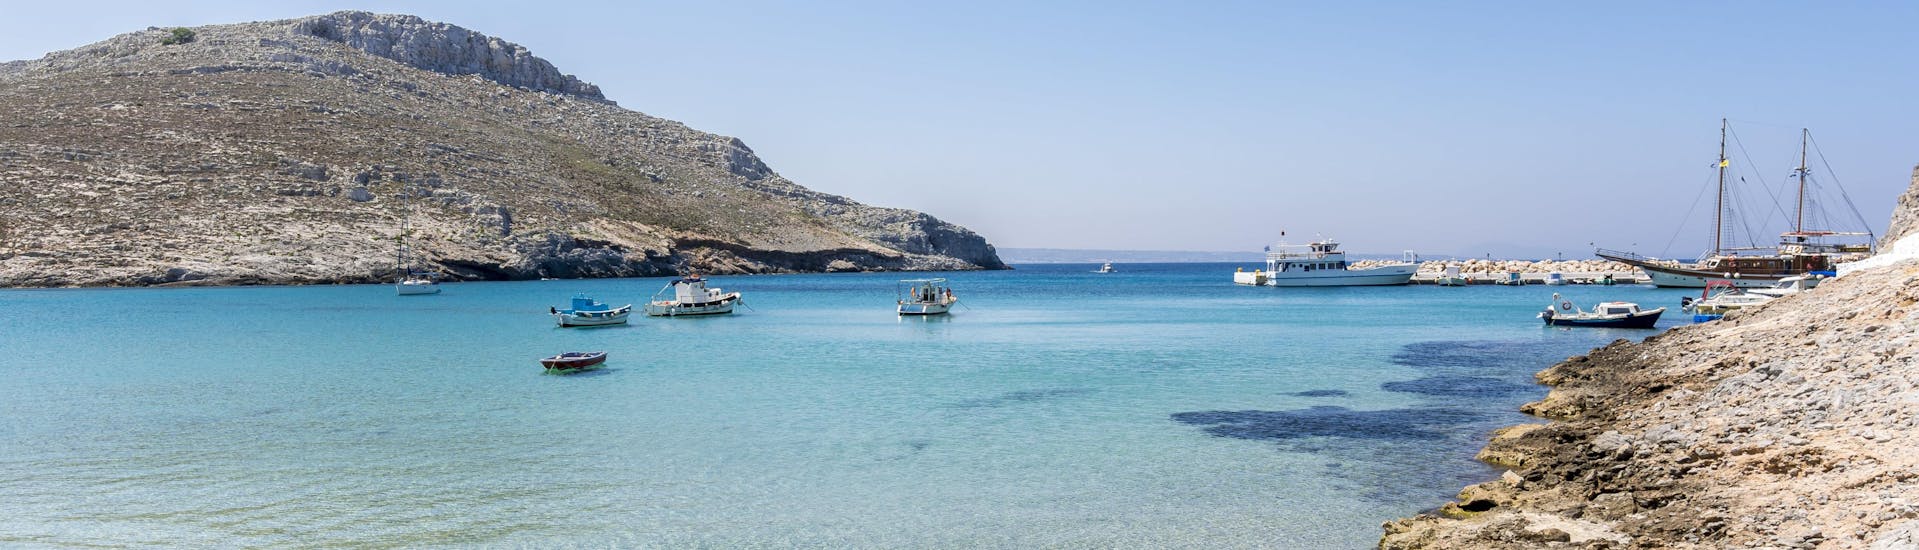 Vue sur une baie de l'île de Pserimos, accessible par une balade en bateau dans le Dodécanèse.